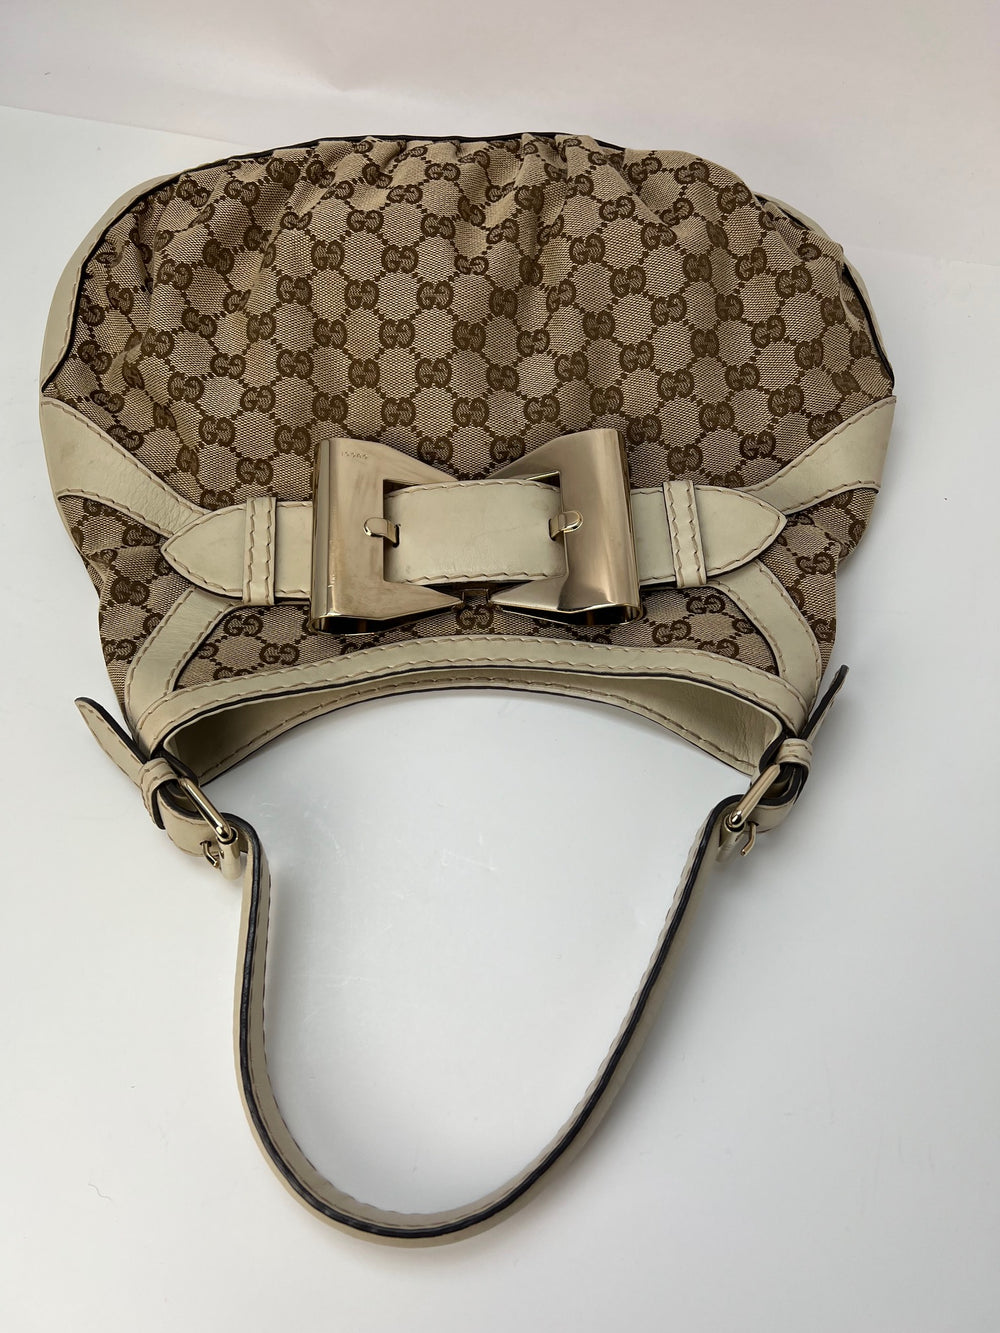 Gucci, Bags, Gucci Hobo Shoulder Bag